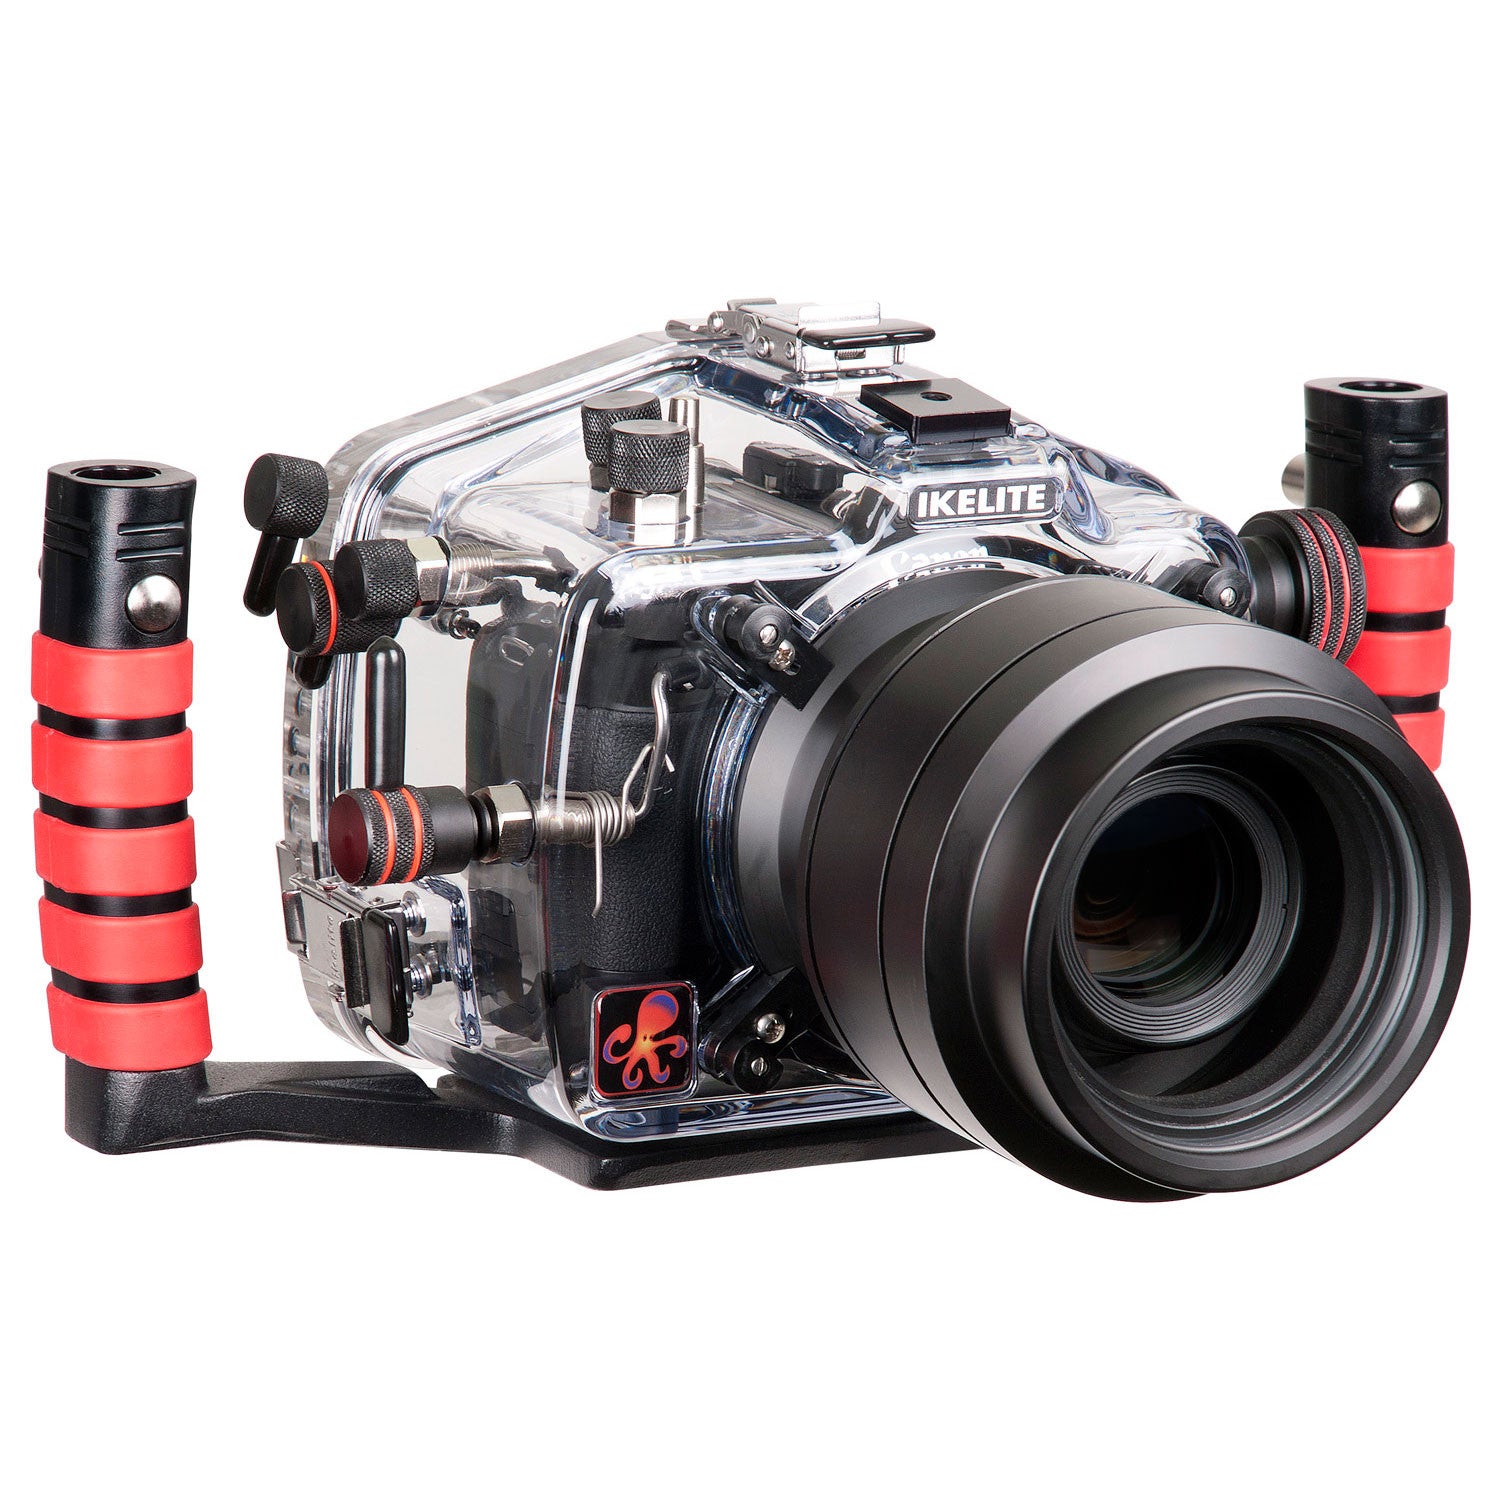 200FL Underwater TTL Housing for Canon EOS 650D, 700D, Rebel T4i, Rebel T5i